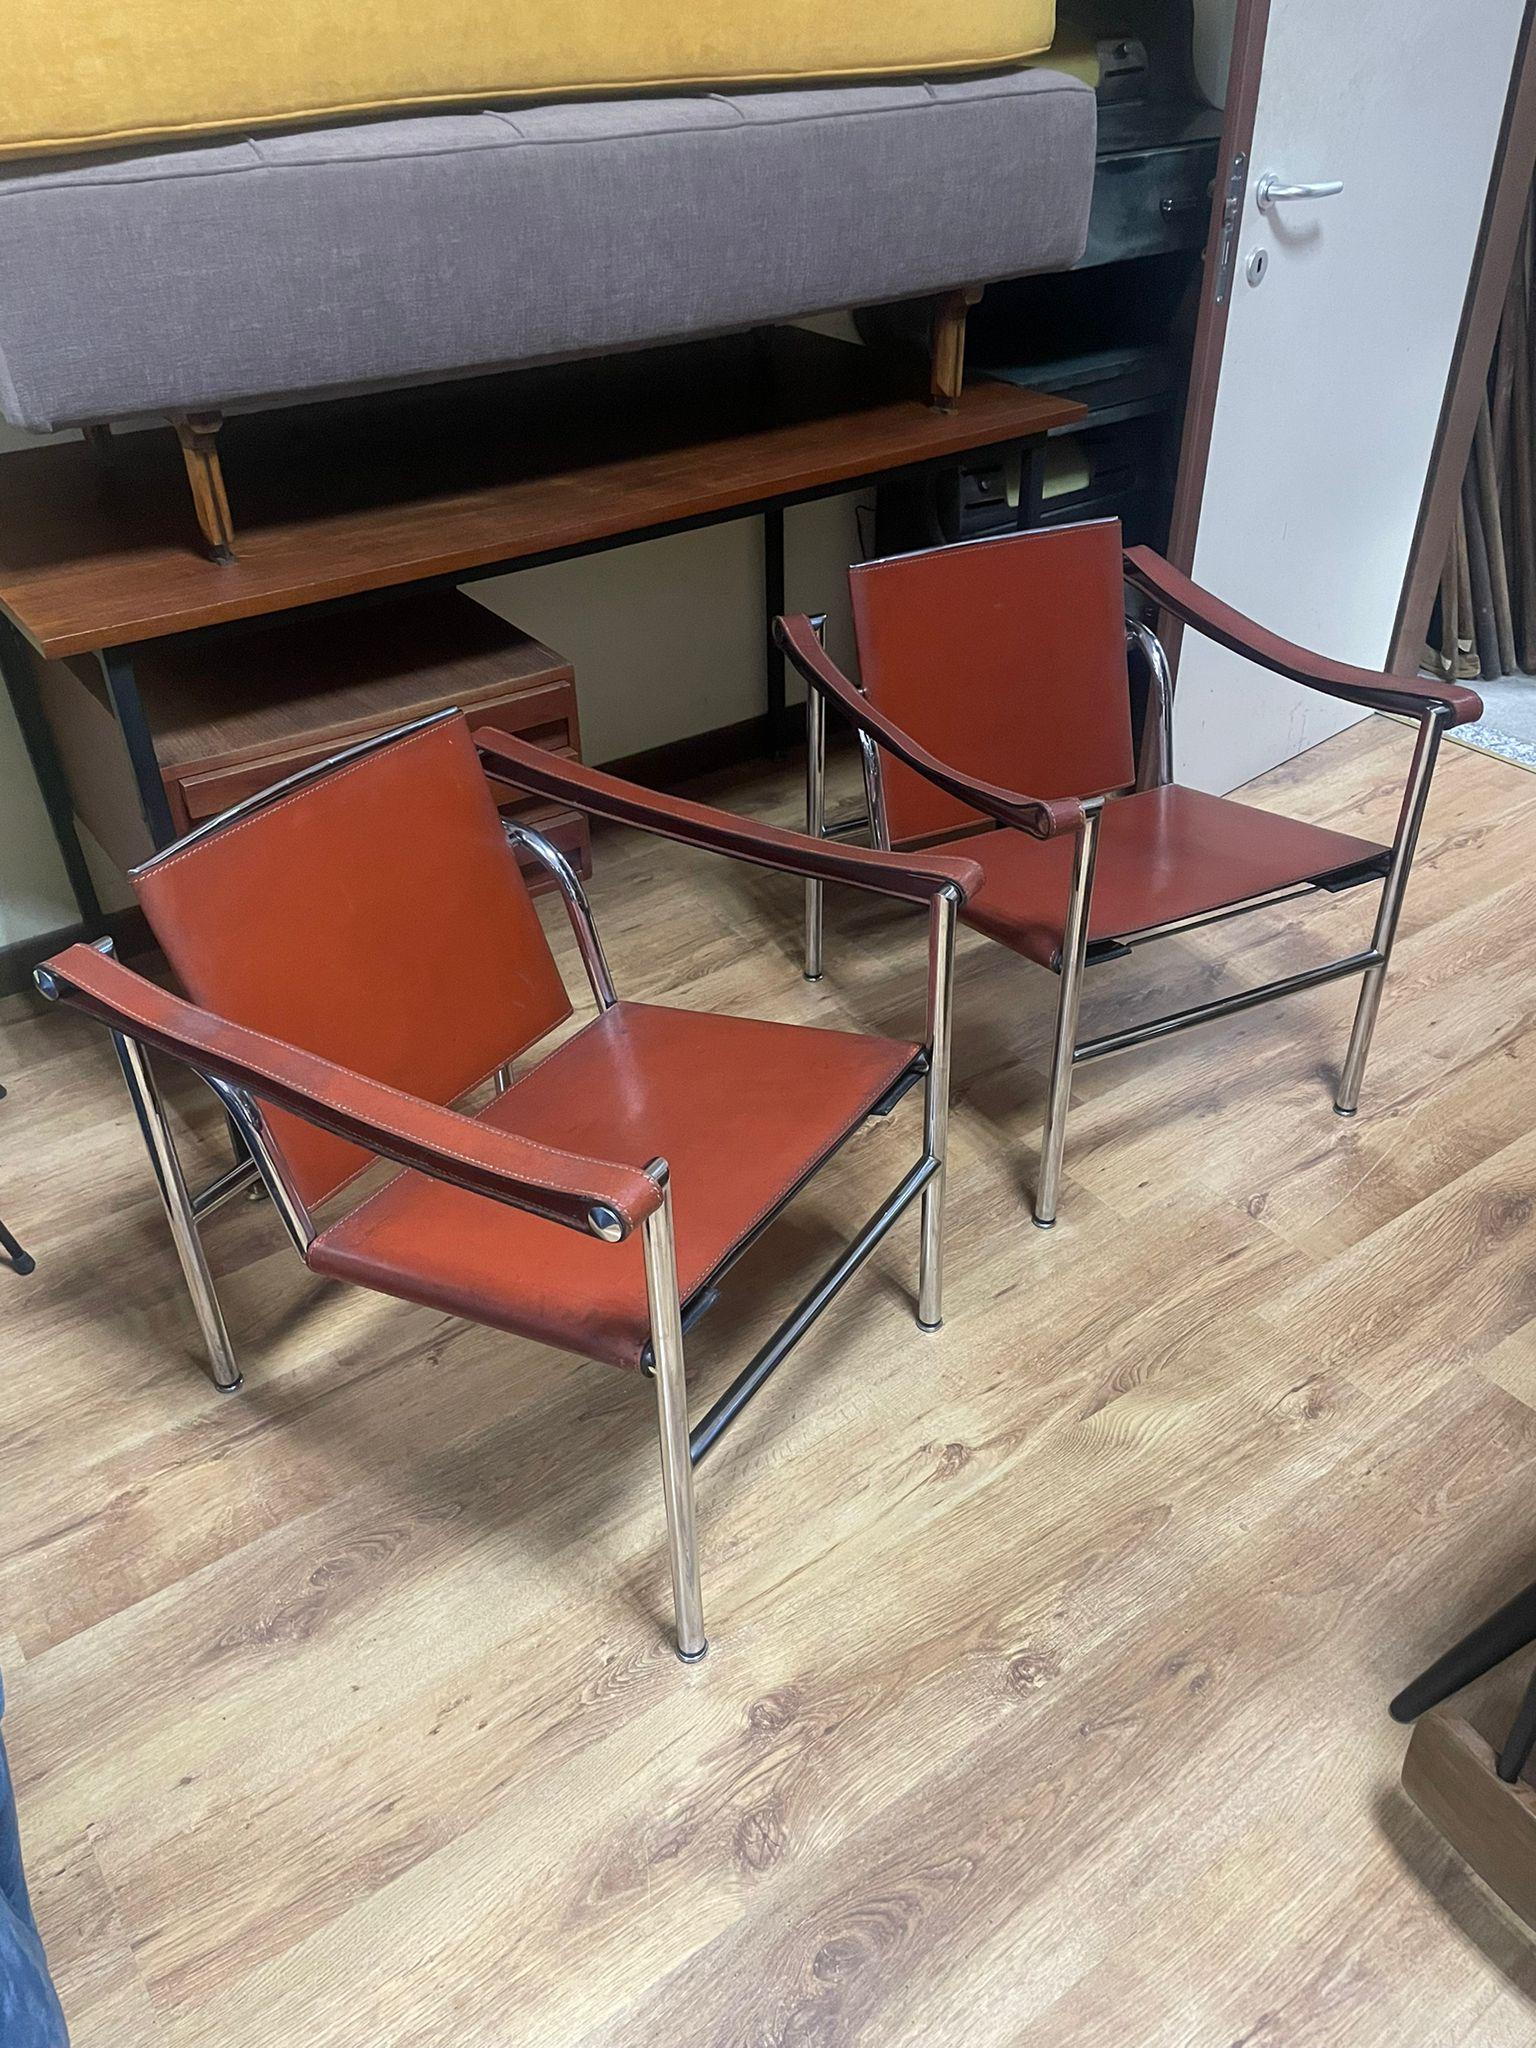 Paire de chaises LC1 par Le Corbusier pour Cassina, années 1970.
Comme tous les meubles de la Collection 